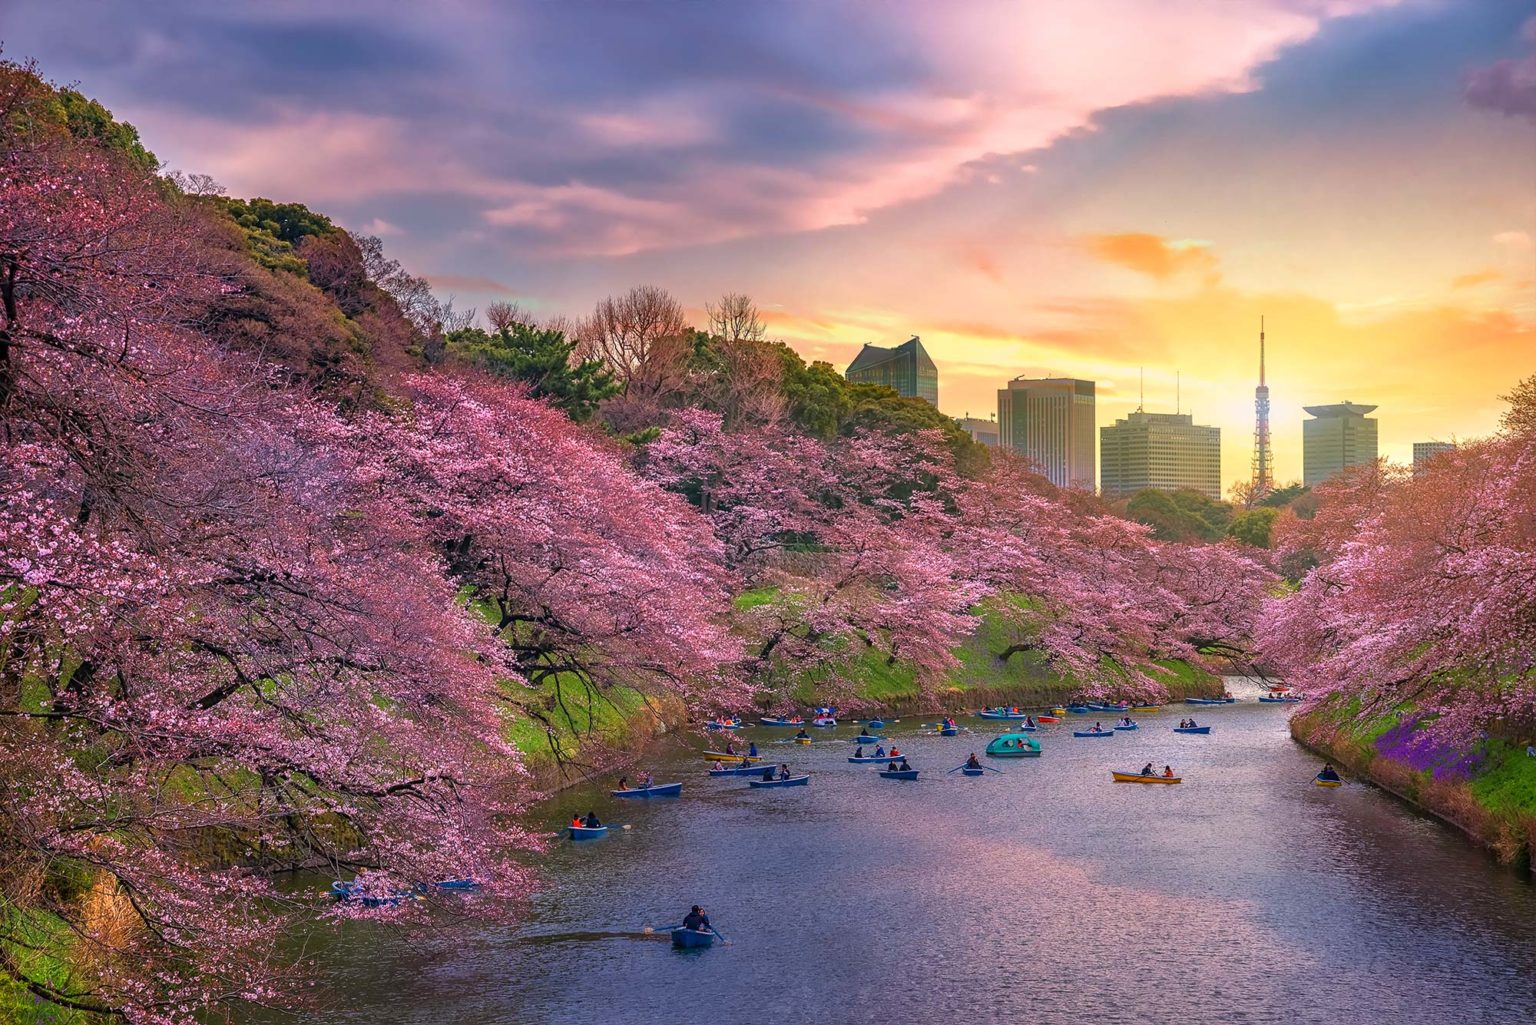 japan tour cherry blossom